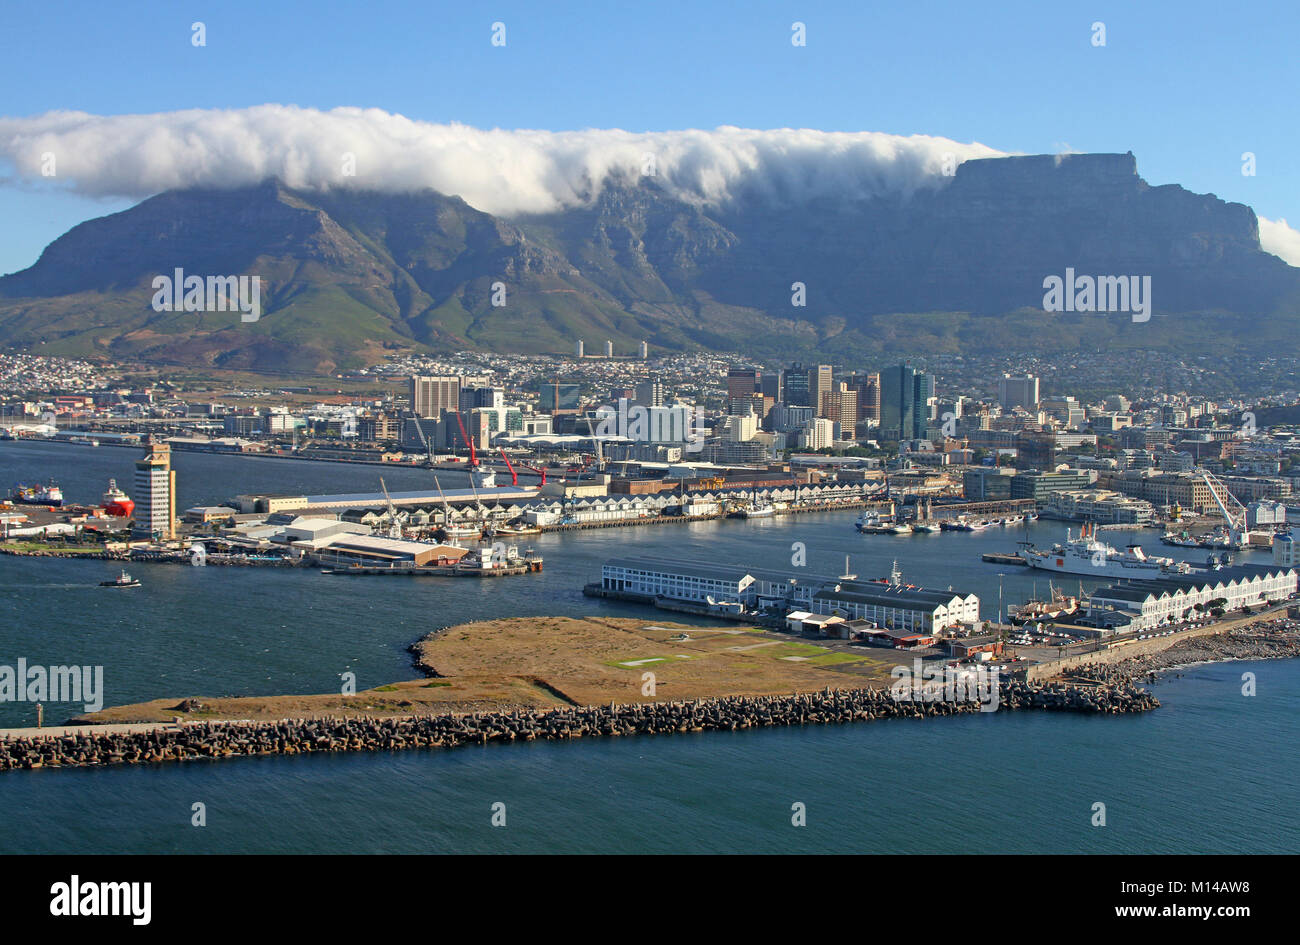 Tafelberg und Teufels Peak mit Cloud Tischdecke gesehen vom Hafen in einem Hubschrauber, Cape Town, Western Cape, Südafrika. Stockfoto